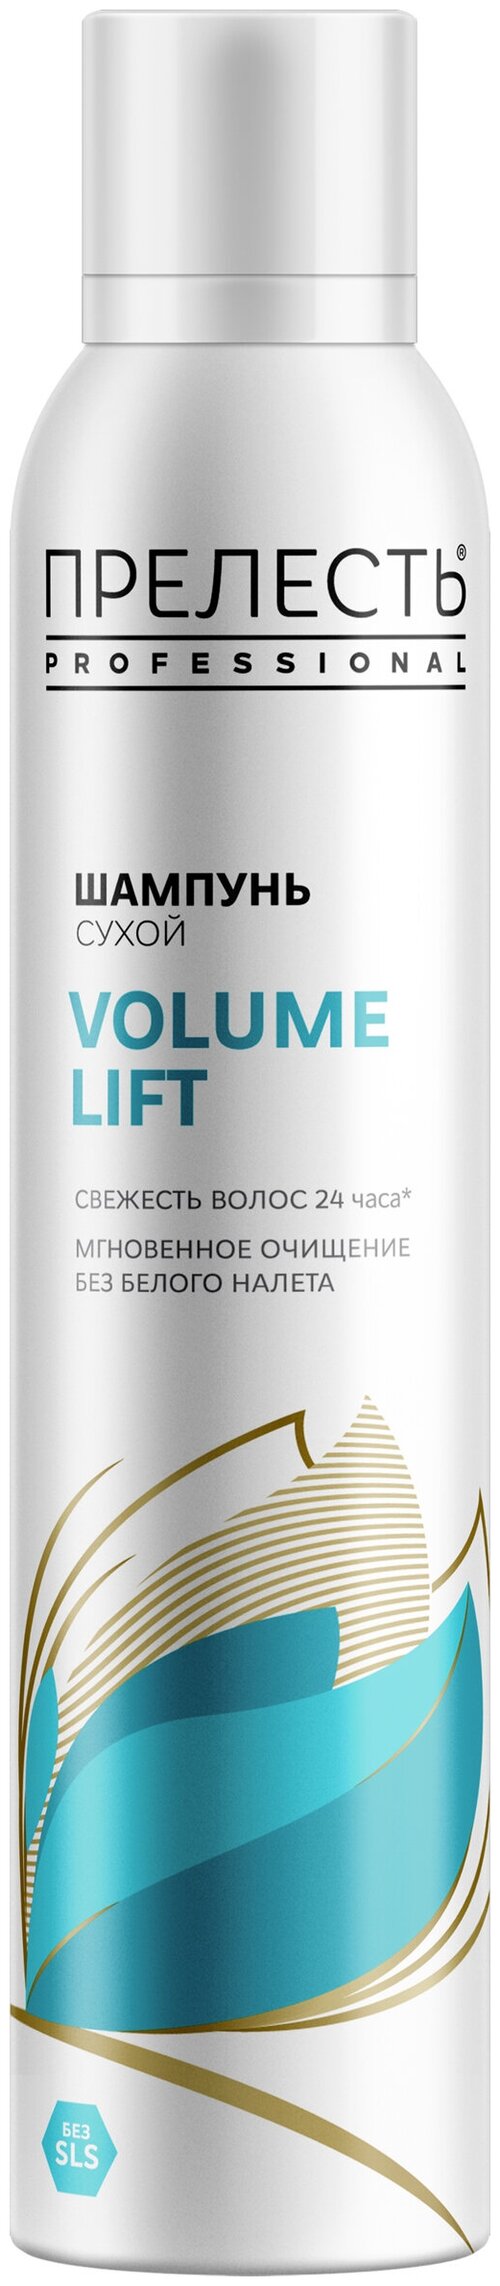 Прелесть Professional сухой шампунь VOLUME LIFT с нейтральным ароматом, 200 г, 200 мл